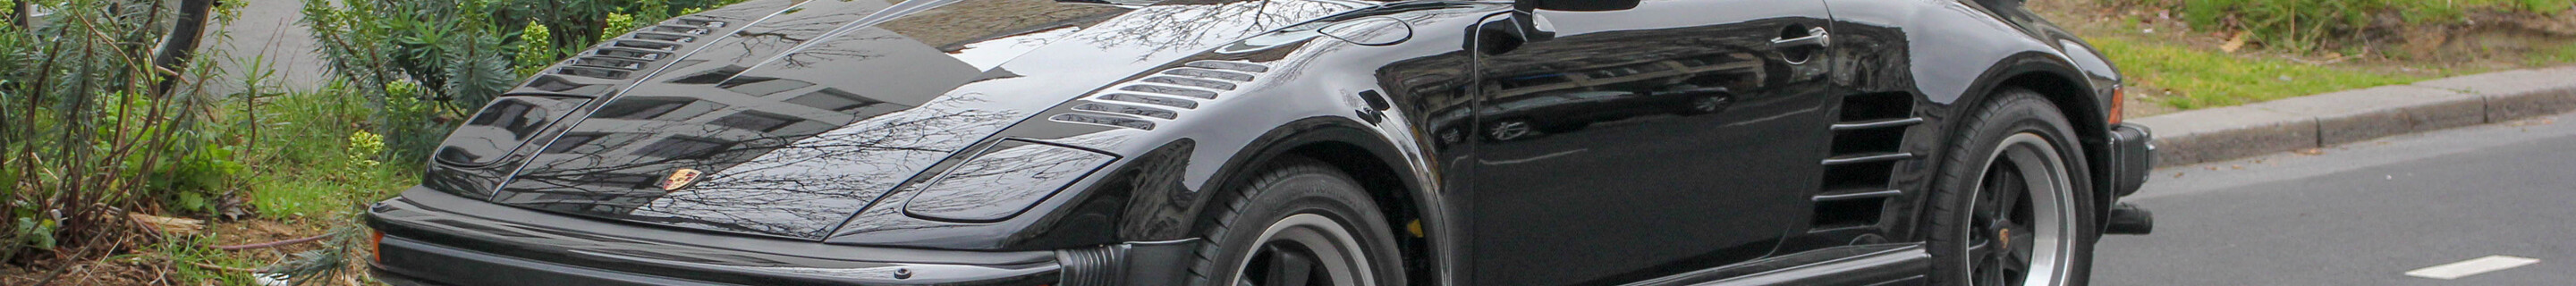 Porsche 930 Turbo Cabriolet Flatnose